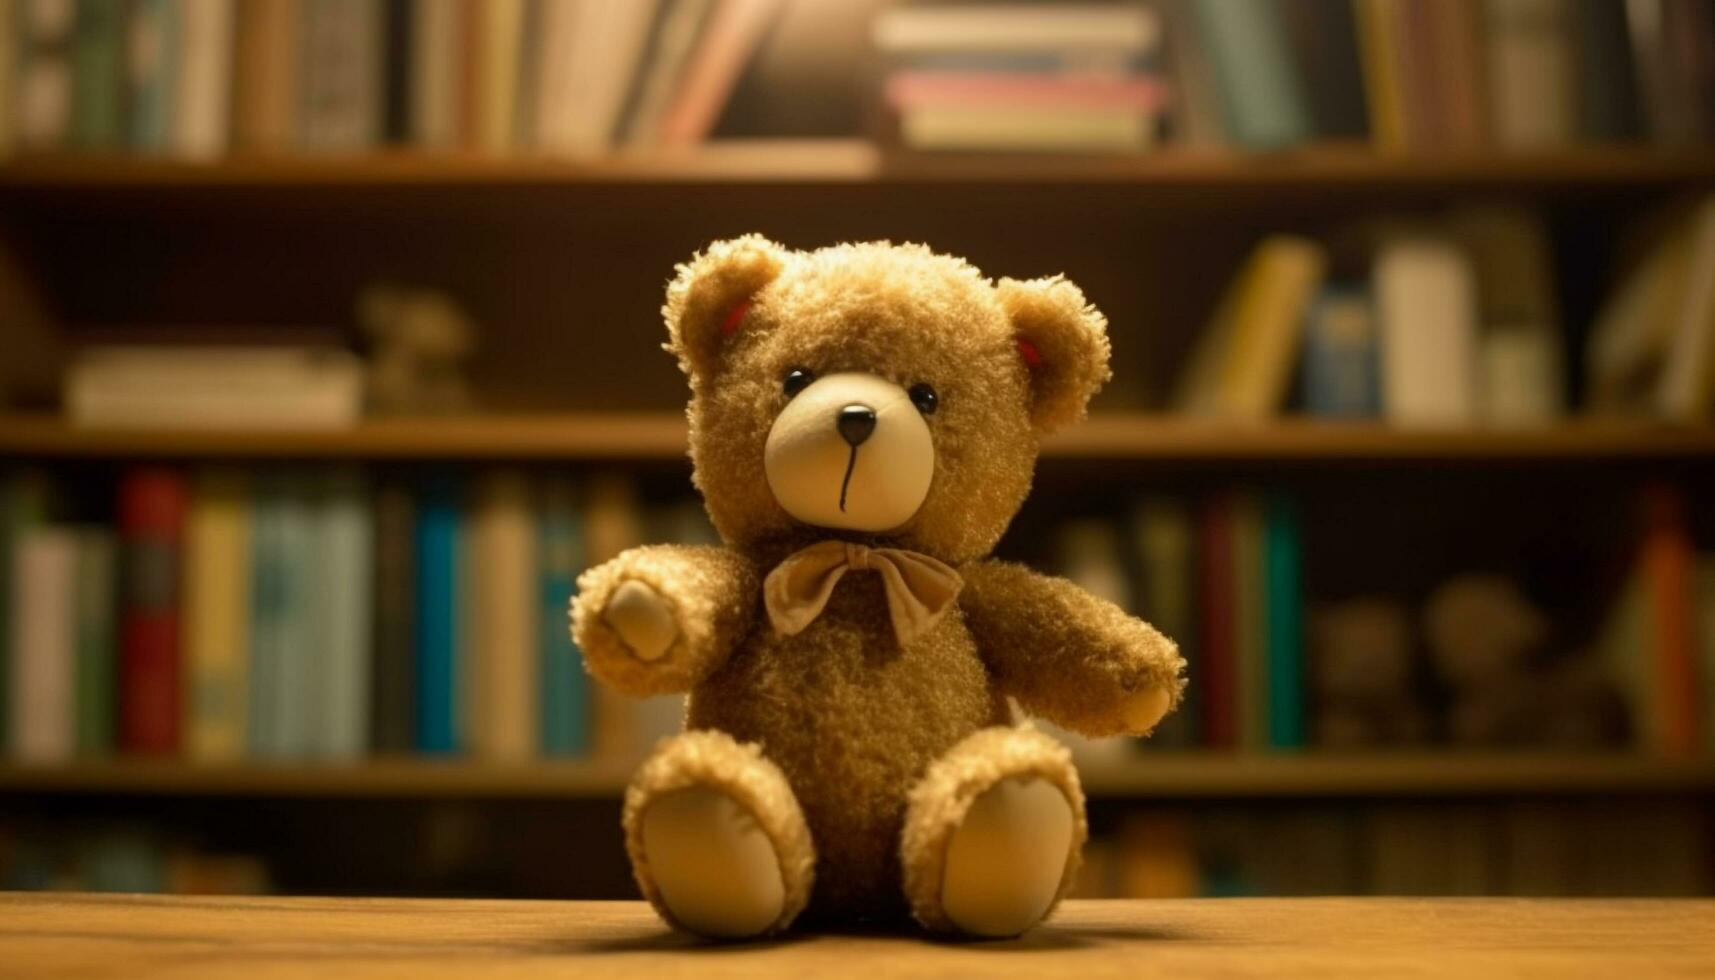 Cute teddy bear sitting on bookshelf, bringing childhood joy generated by AI photo